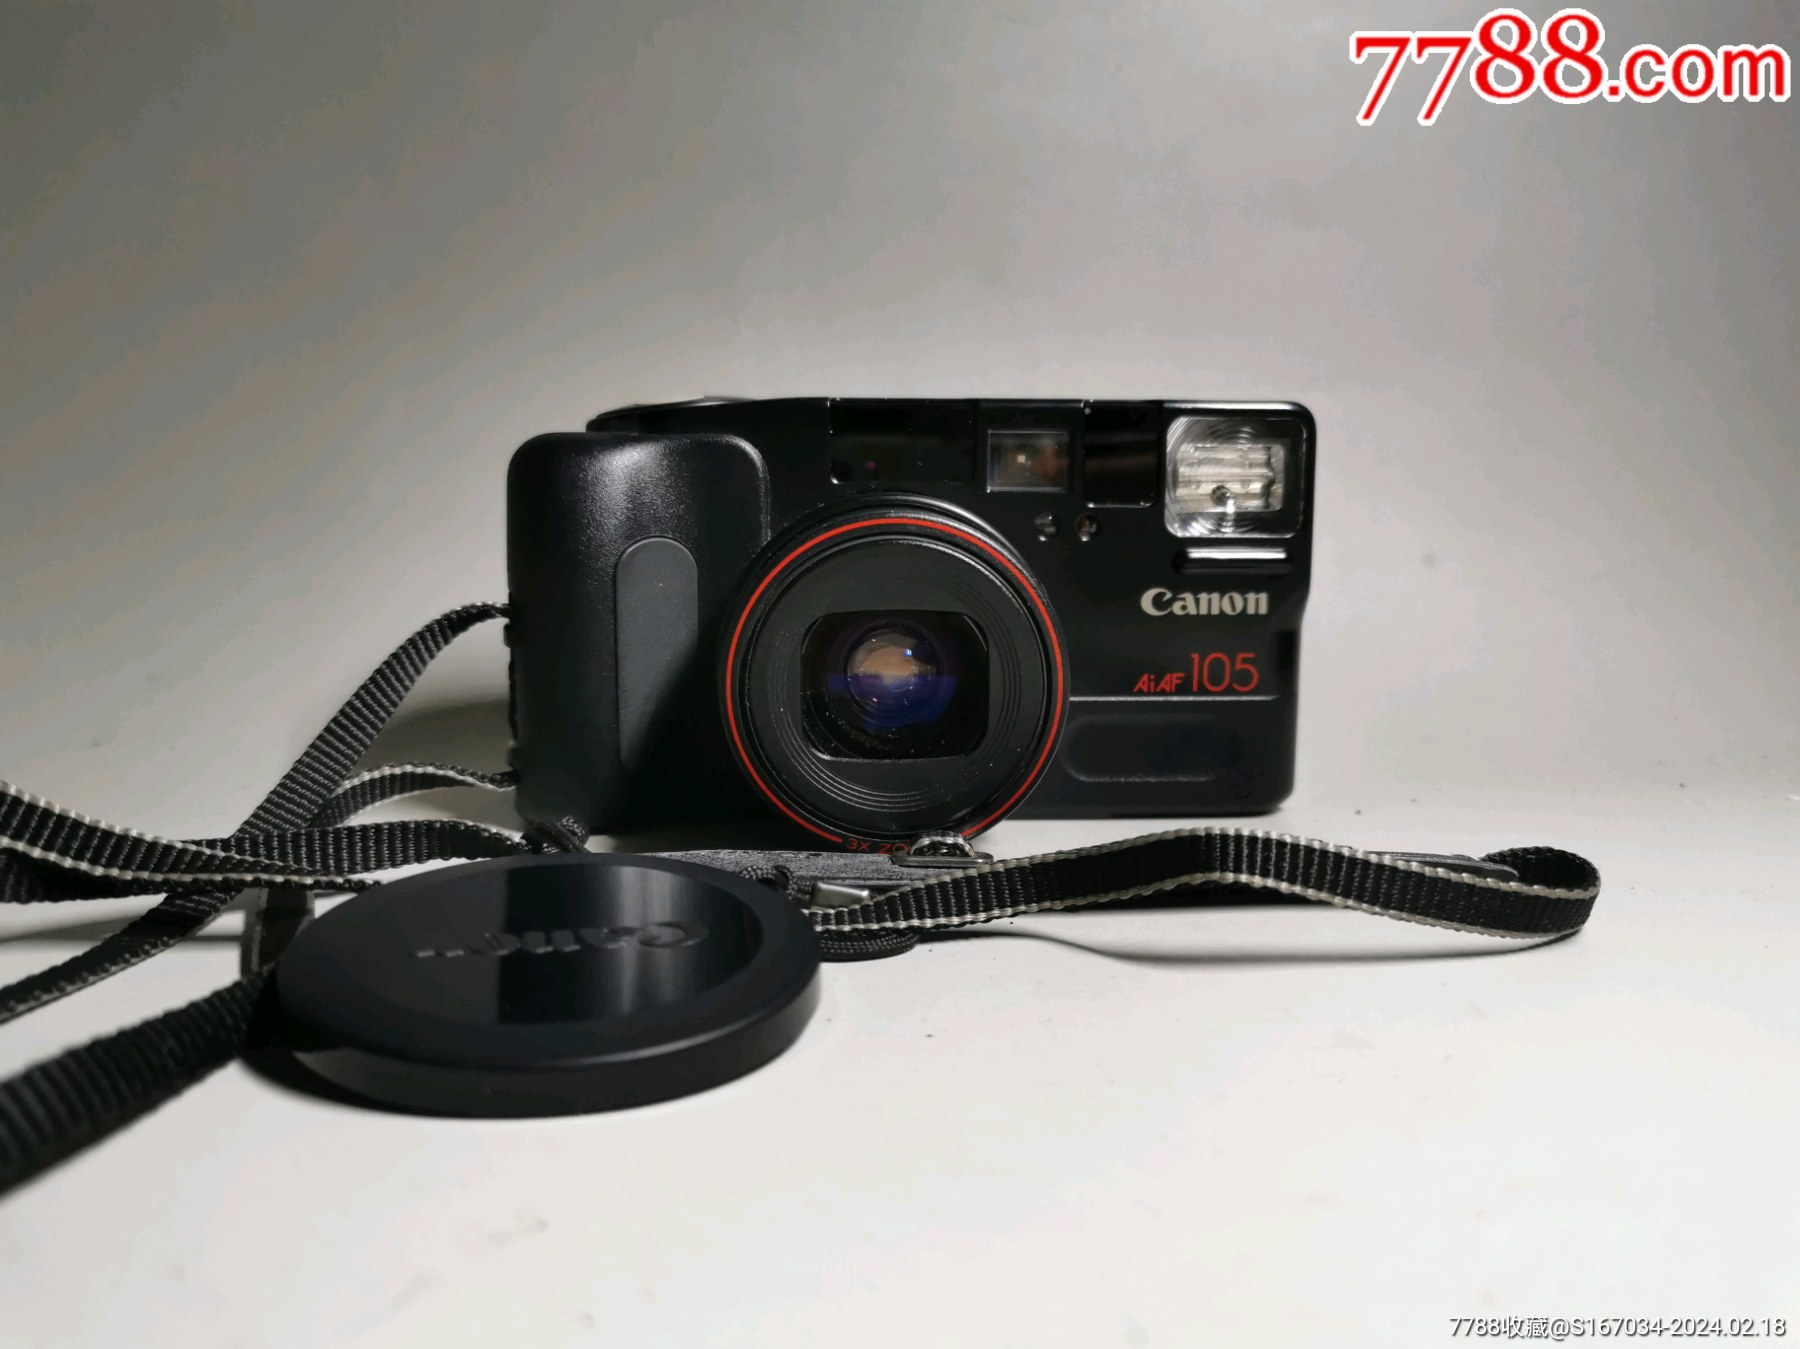 佳能canonaf105胶片相机单机身品相如图放入电池无反应电池盖子卡